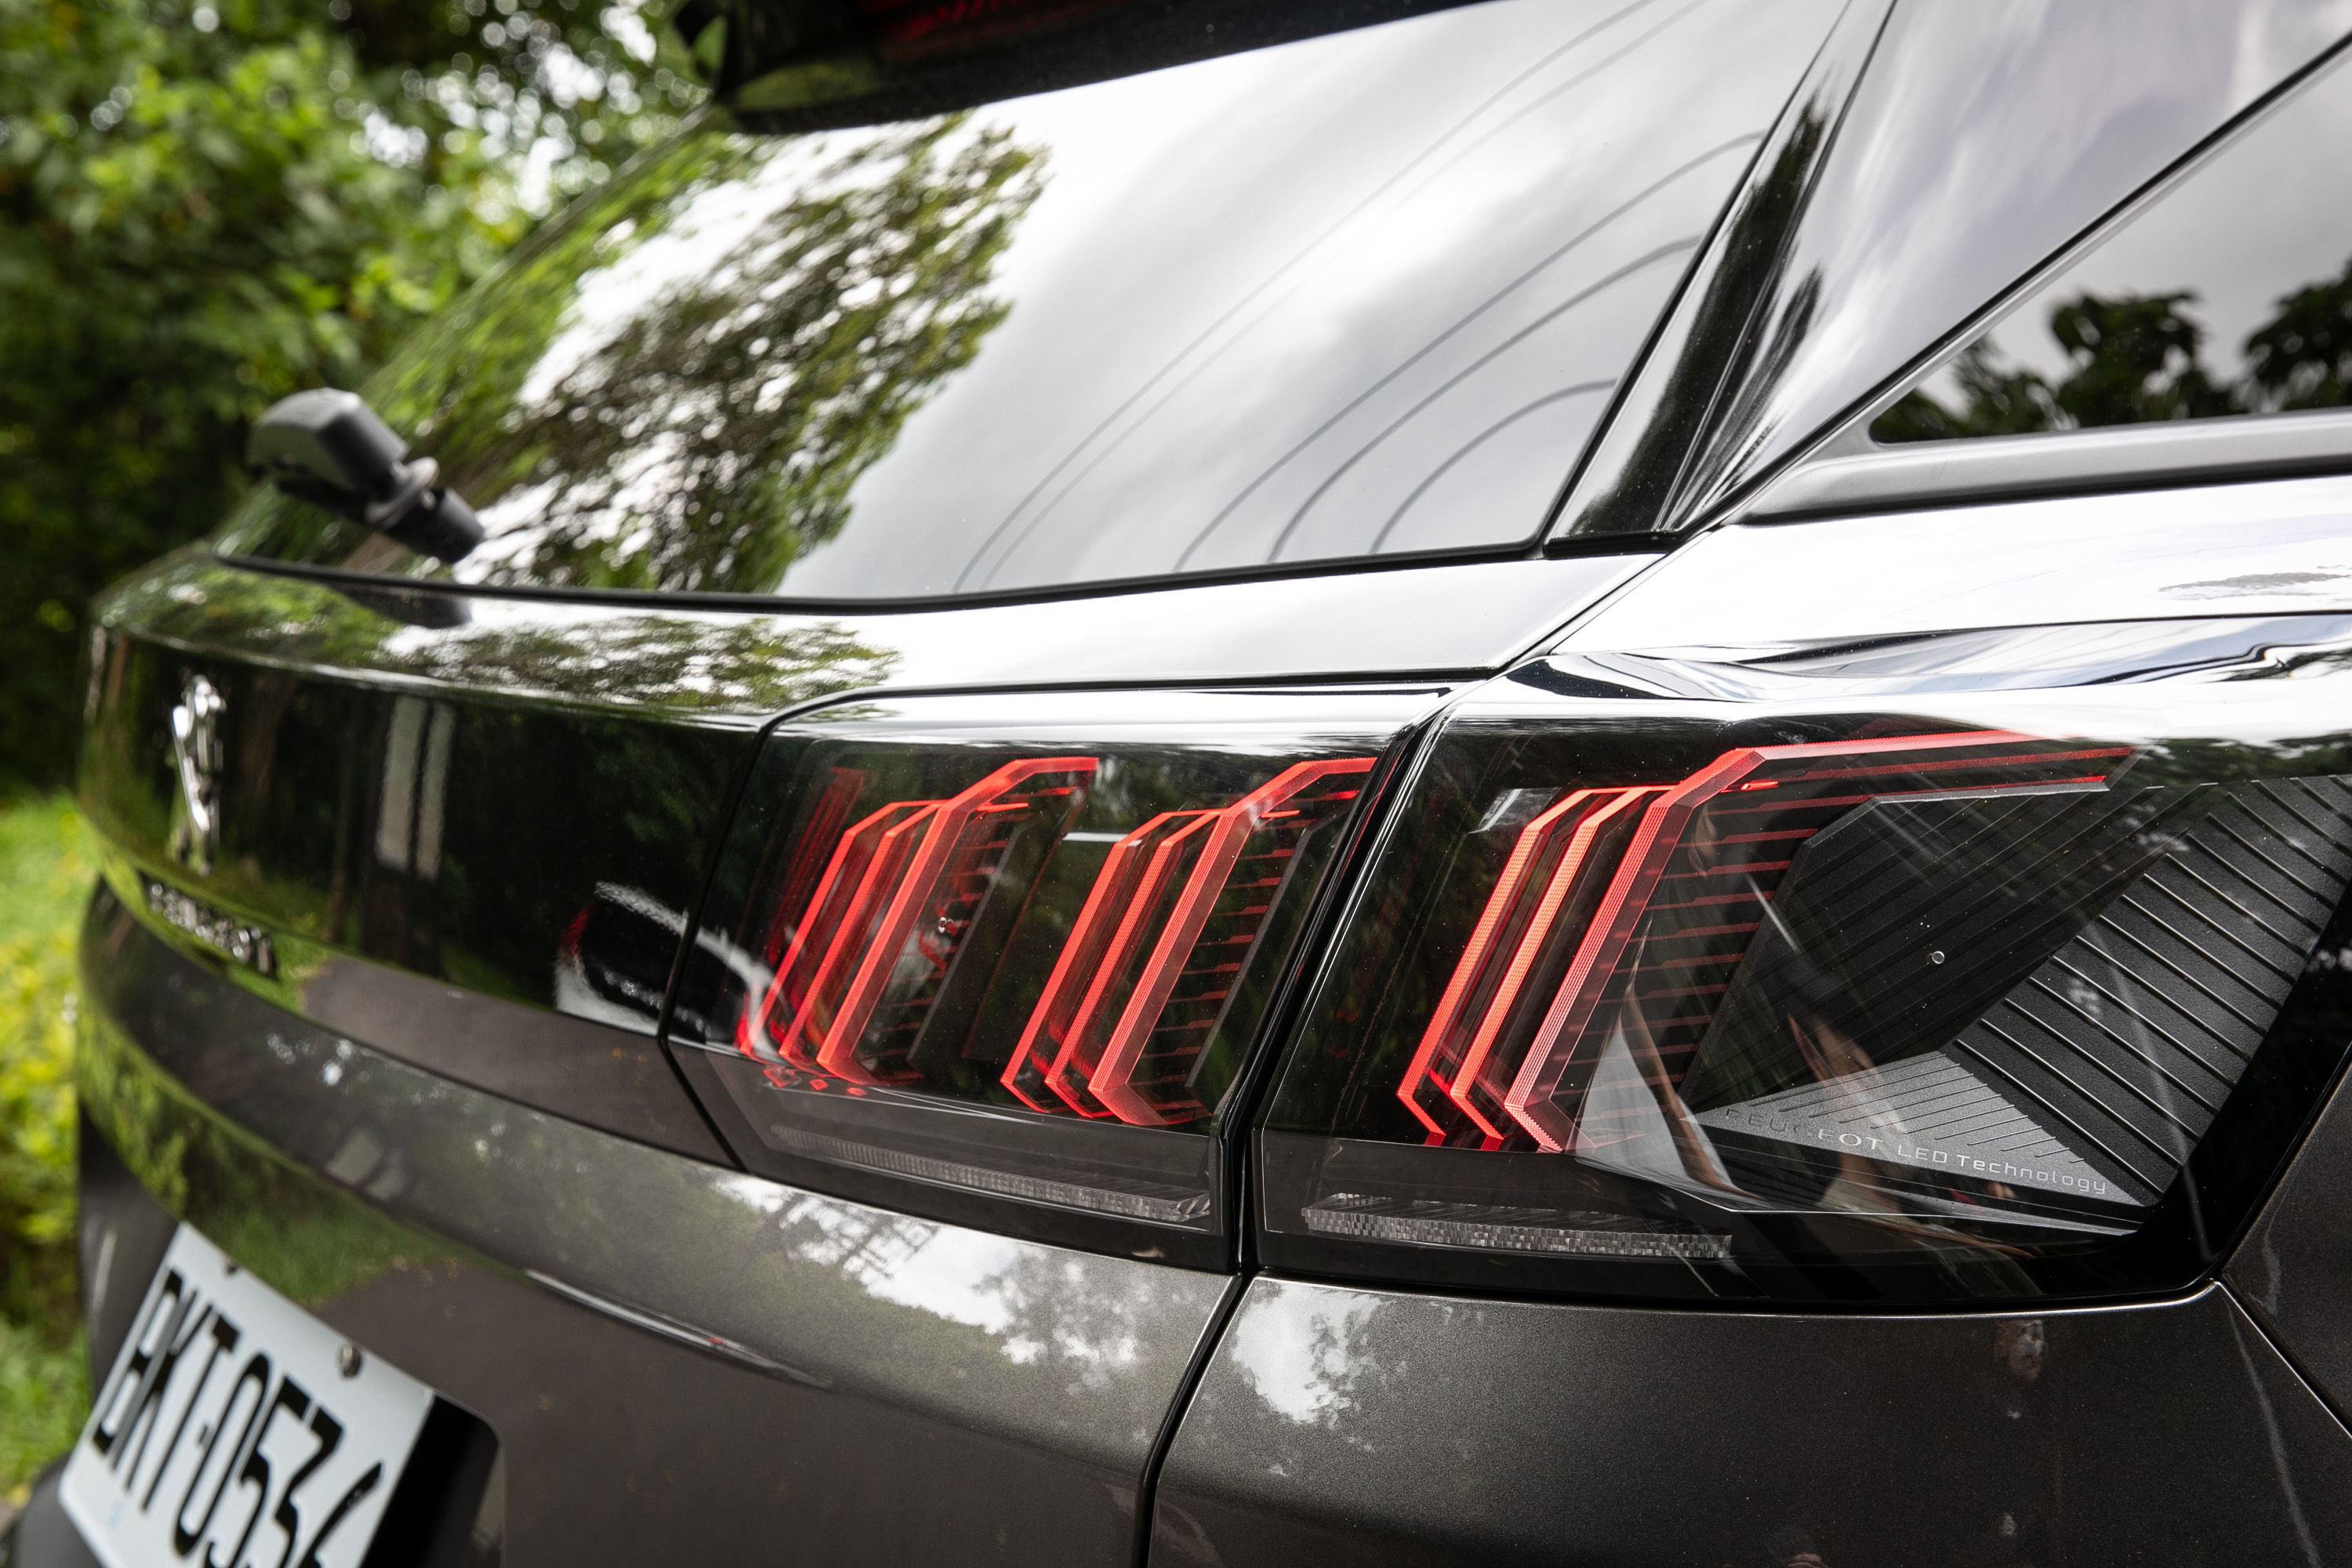 車尾獅爪般的 LED 尾燈造型，近看更可發現燈型設計的細微巧妙。